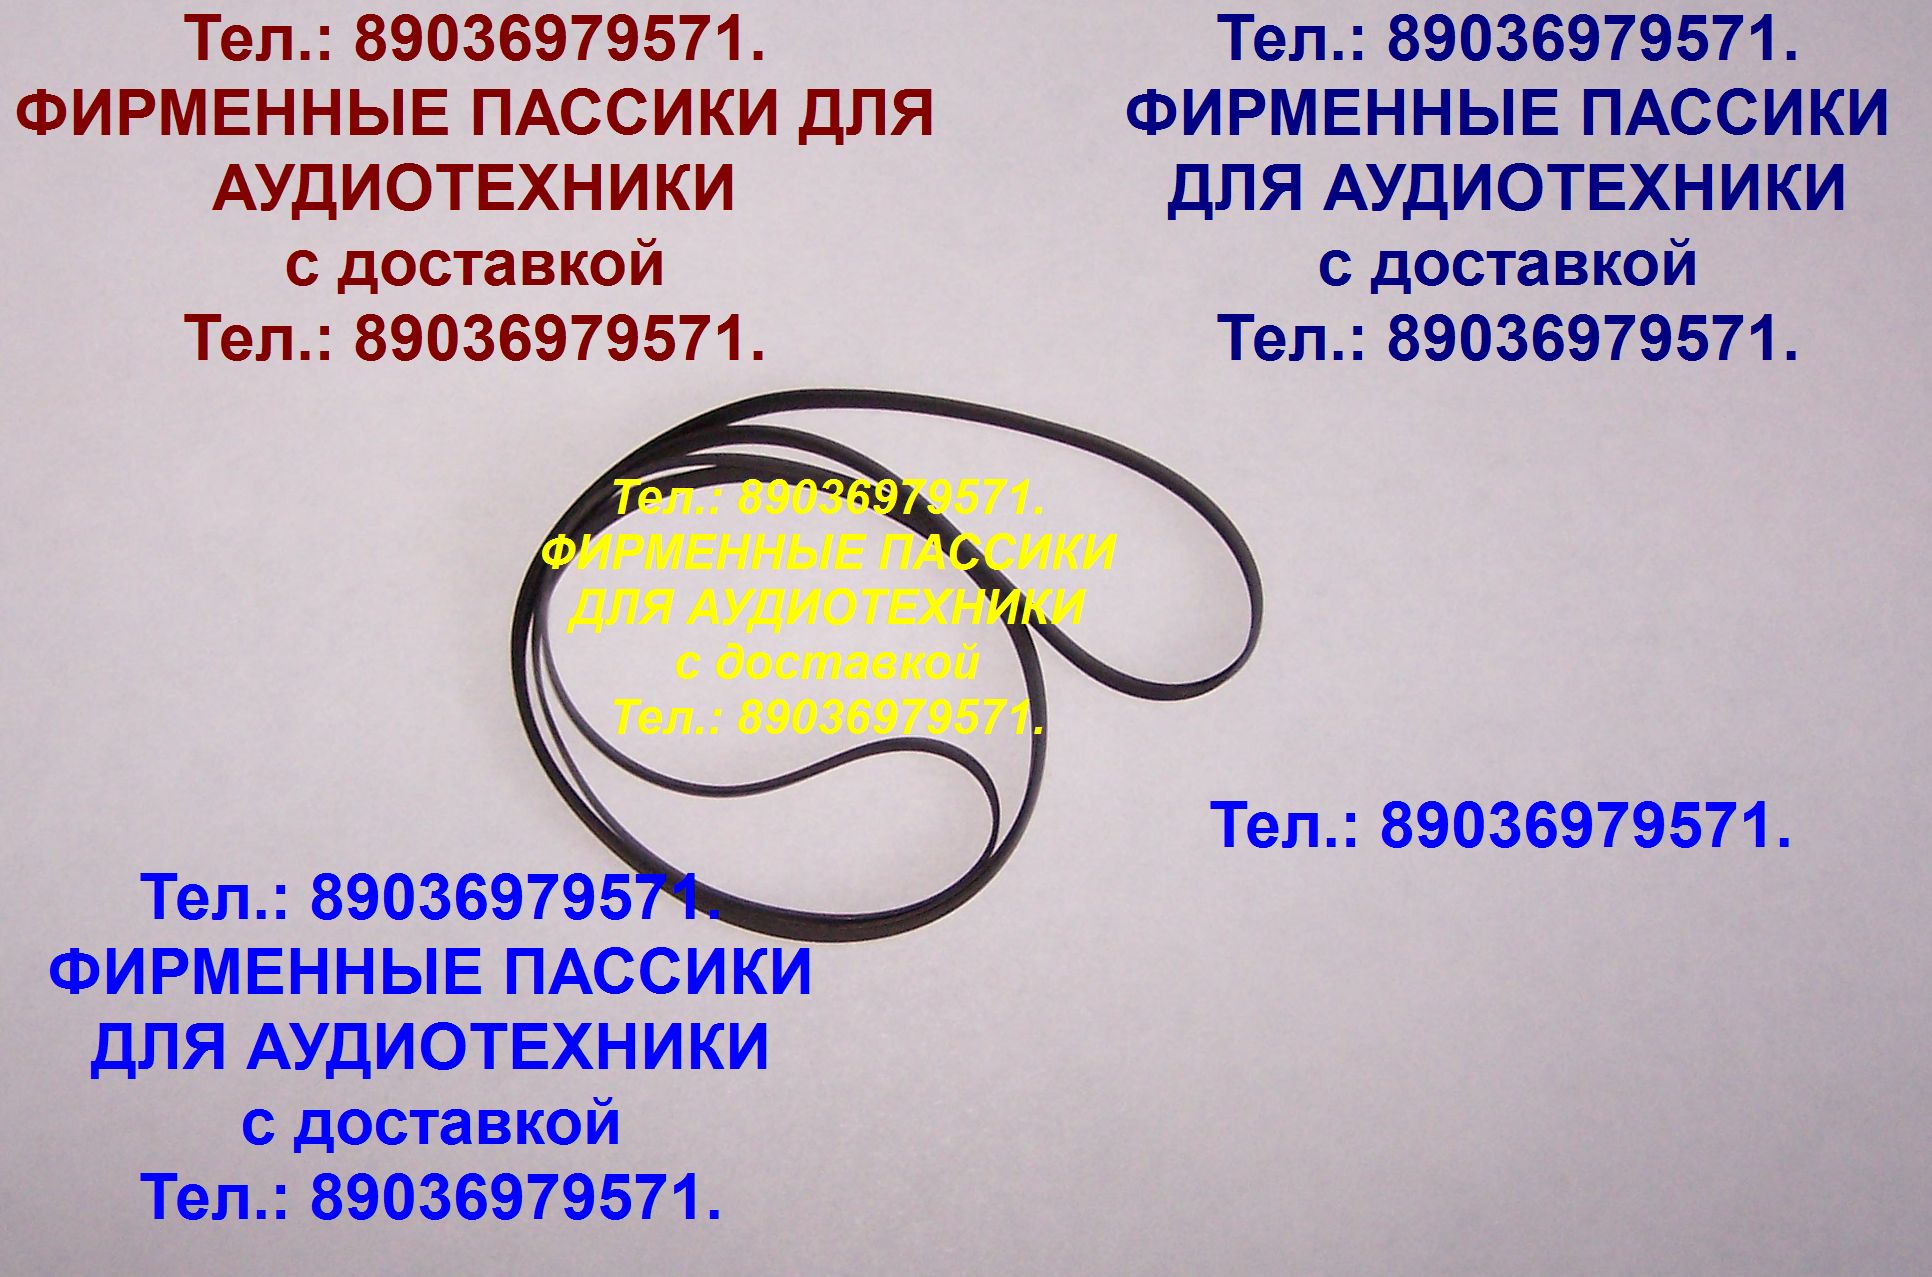 Пассик для Technics RS-TR979 пассики пасики ремень для Техникс RSTR979 в городе Москва, фото 1, телефон продавца: +7 (903) 697-95-71